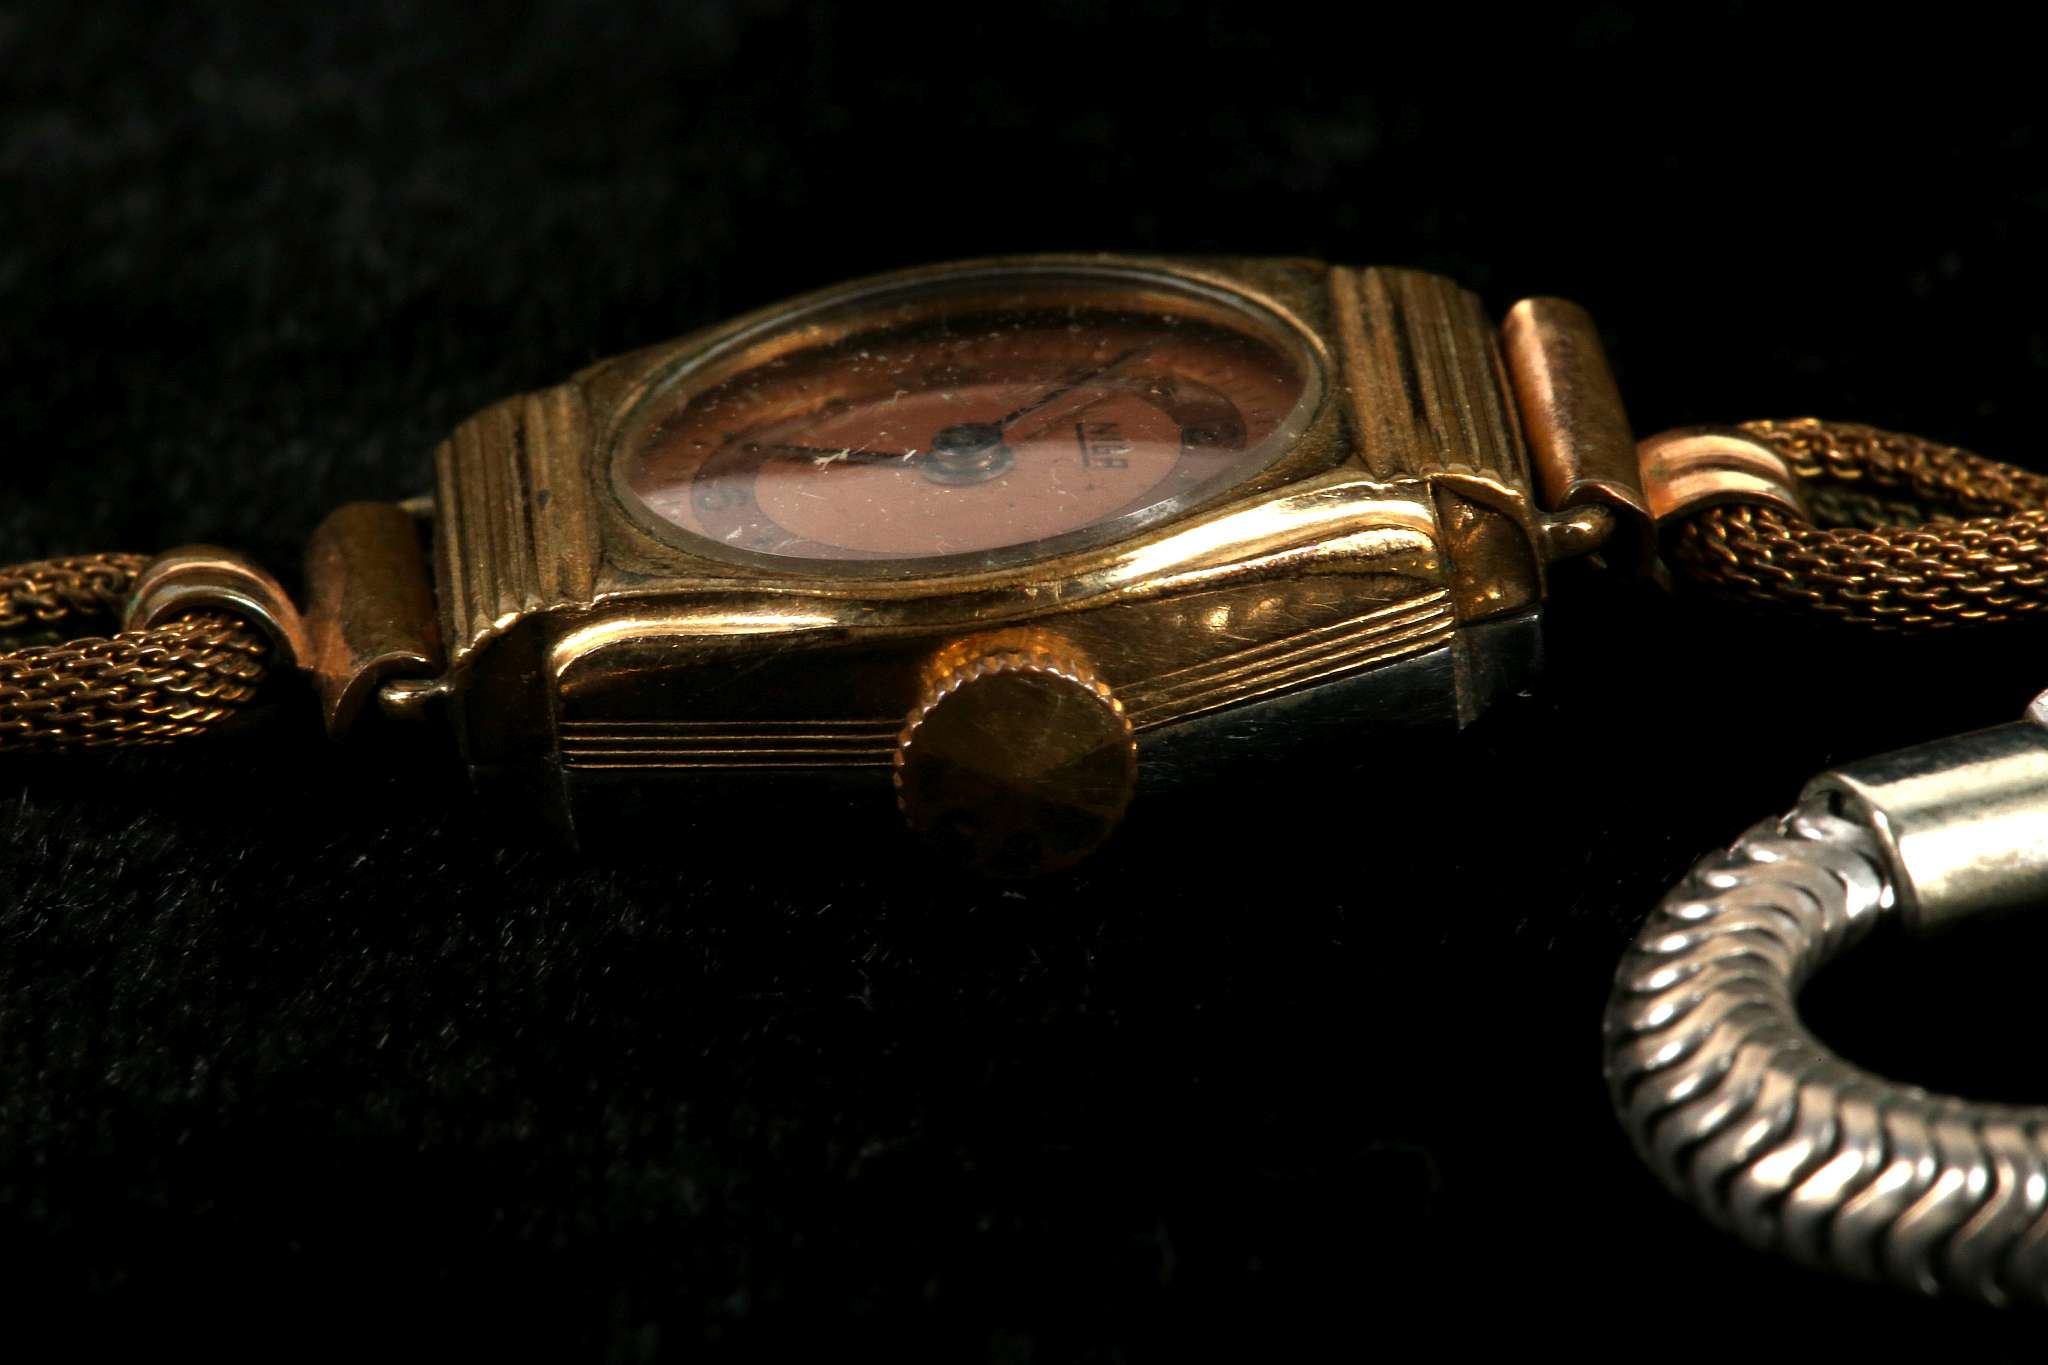 A ladies vintage silver cocktail watch, diamanté d - Image 3 of 4